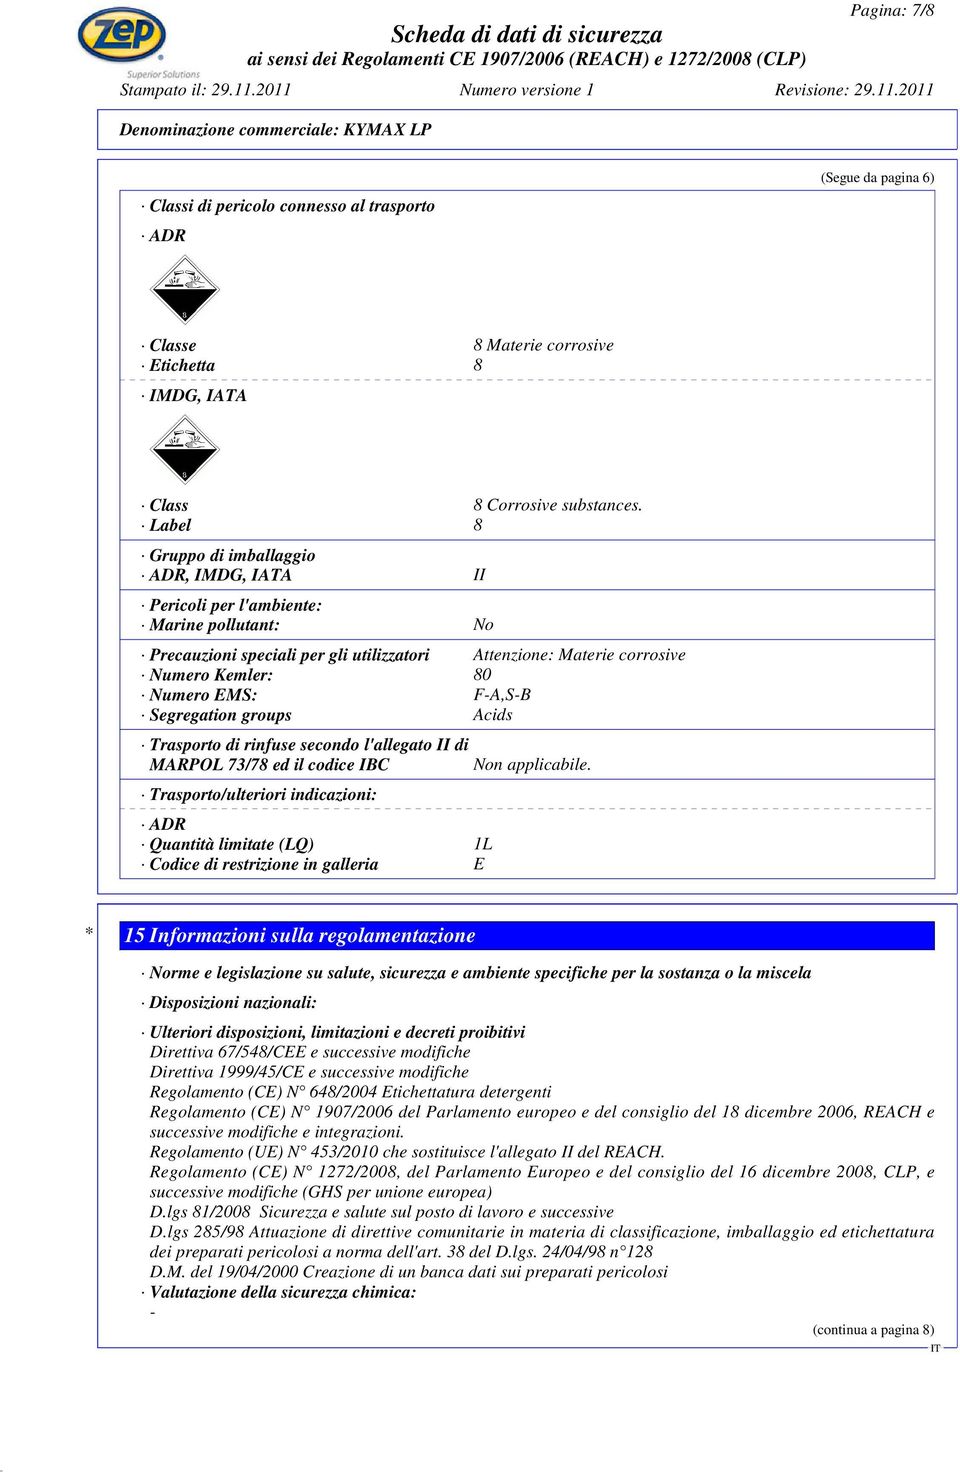 F-A,S-B Segregation groups Acids Trasporto di rinfuse secondo l'allegato II di MARPOL 73/78 ed il codice IBC Trasporto/ulteriori indicazioni: ADR Quantità limitate (LQ) 1L Codice di restrizione in